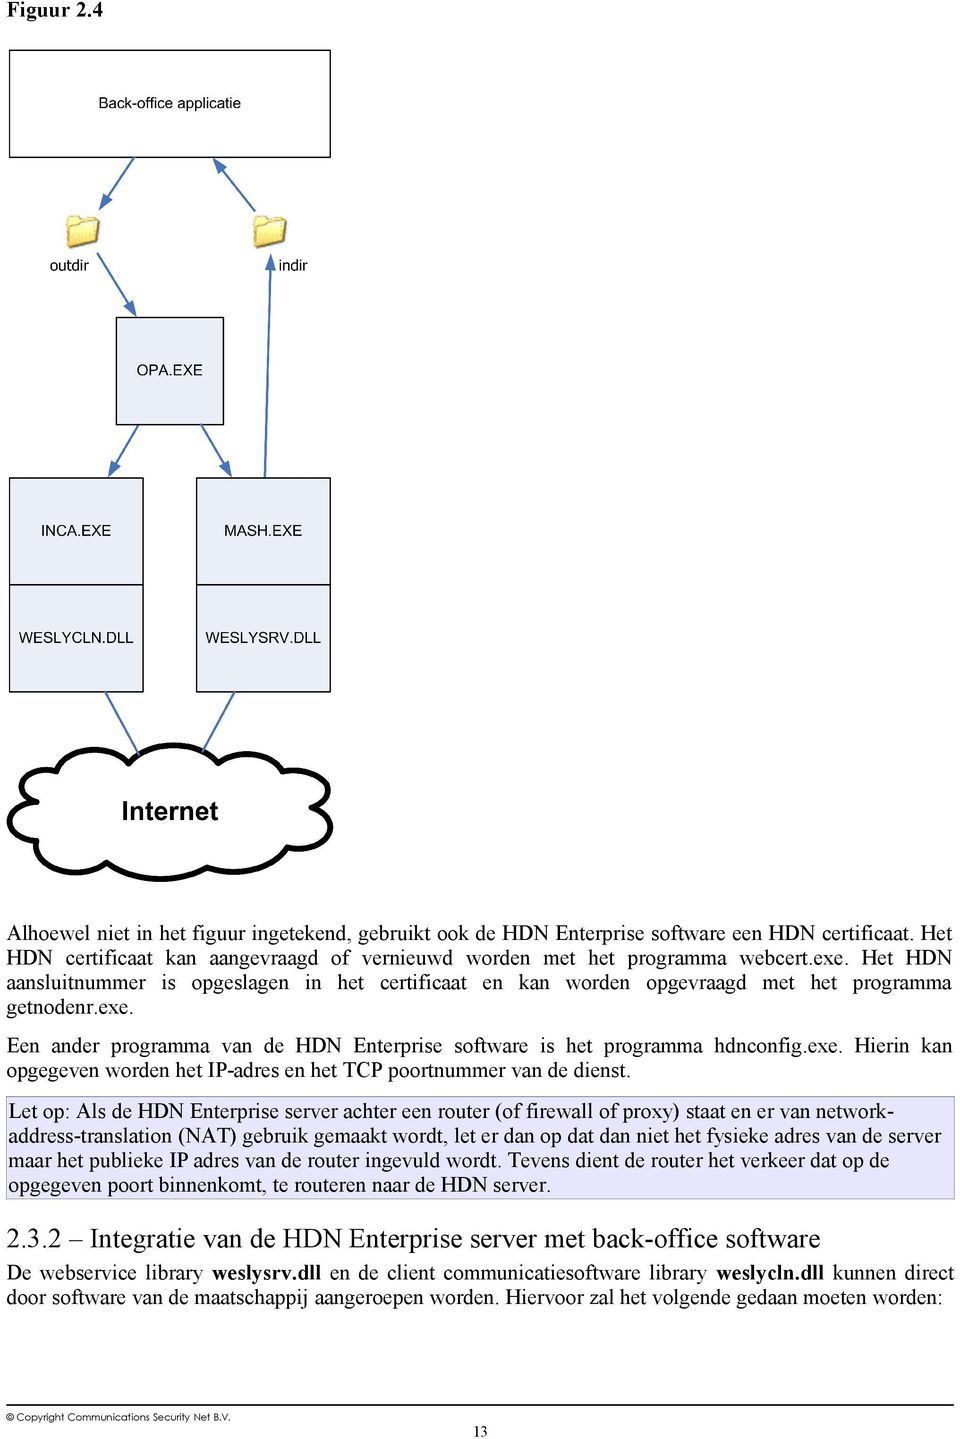 Let op: Als de HDN Enterprise server achter een router (of firewall of proxy) staat en er van networkaddress-translation (NAT) gebruik gemaakt wordt, let er dan op dat dan niet het fysieke adres van